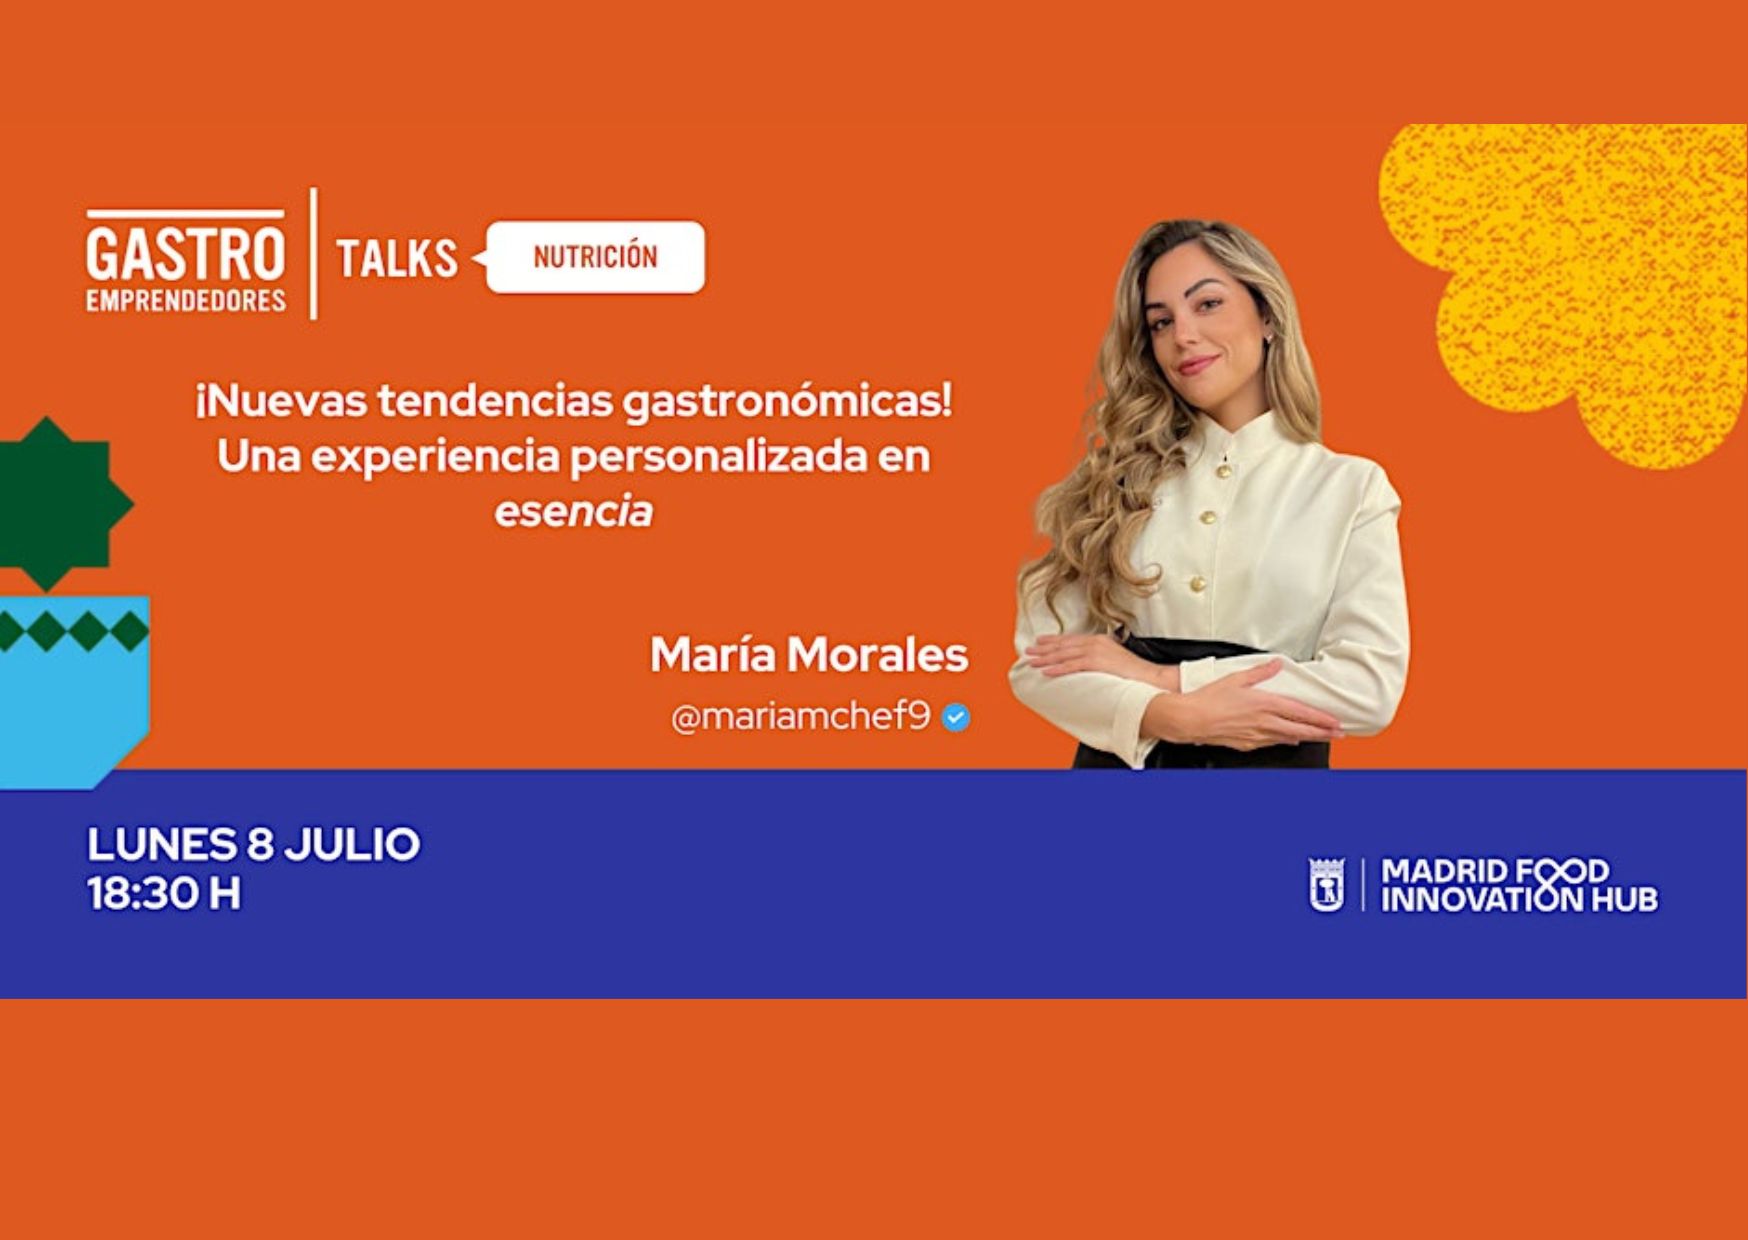 Gastroemprendedores Talks con María Morales